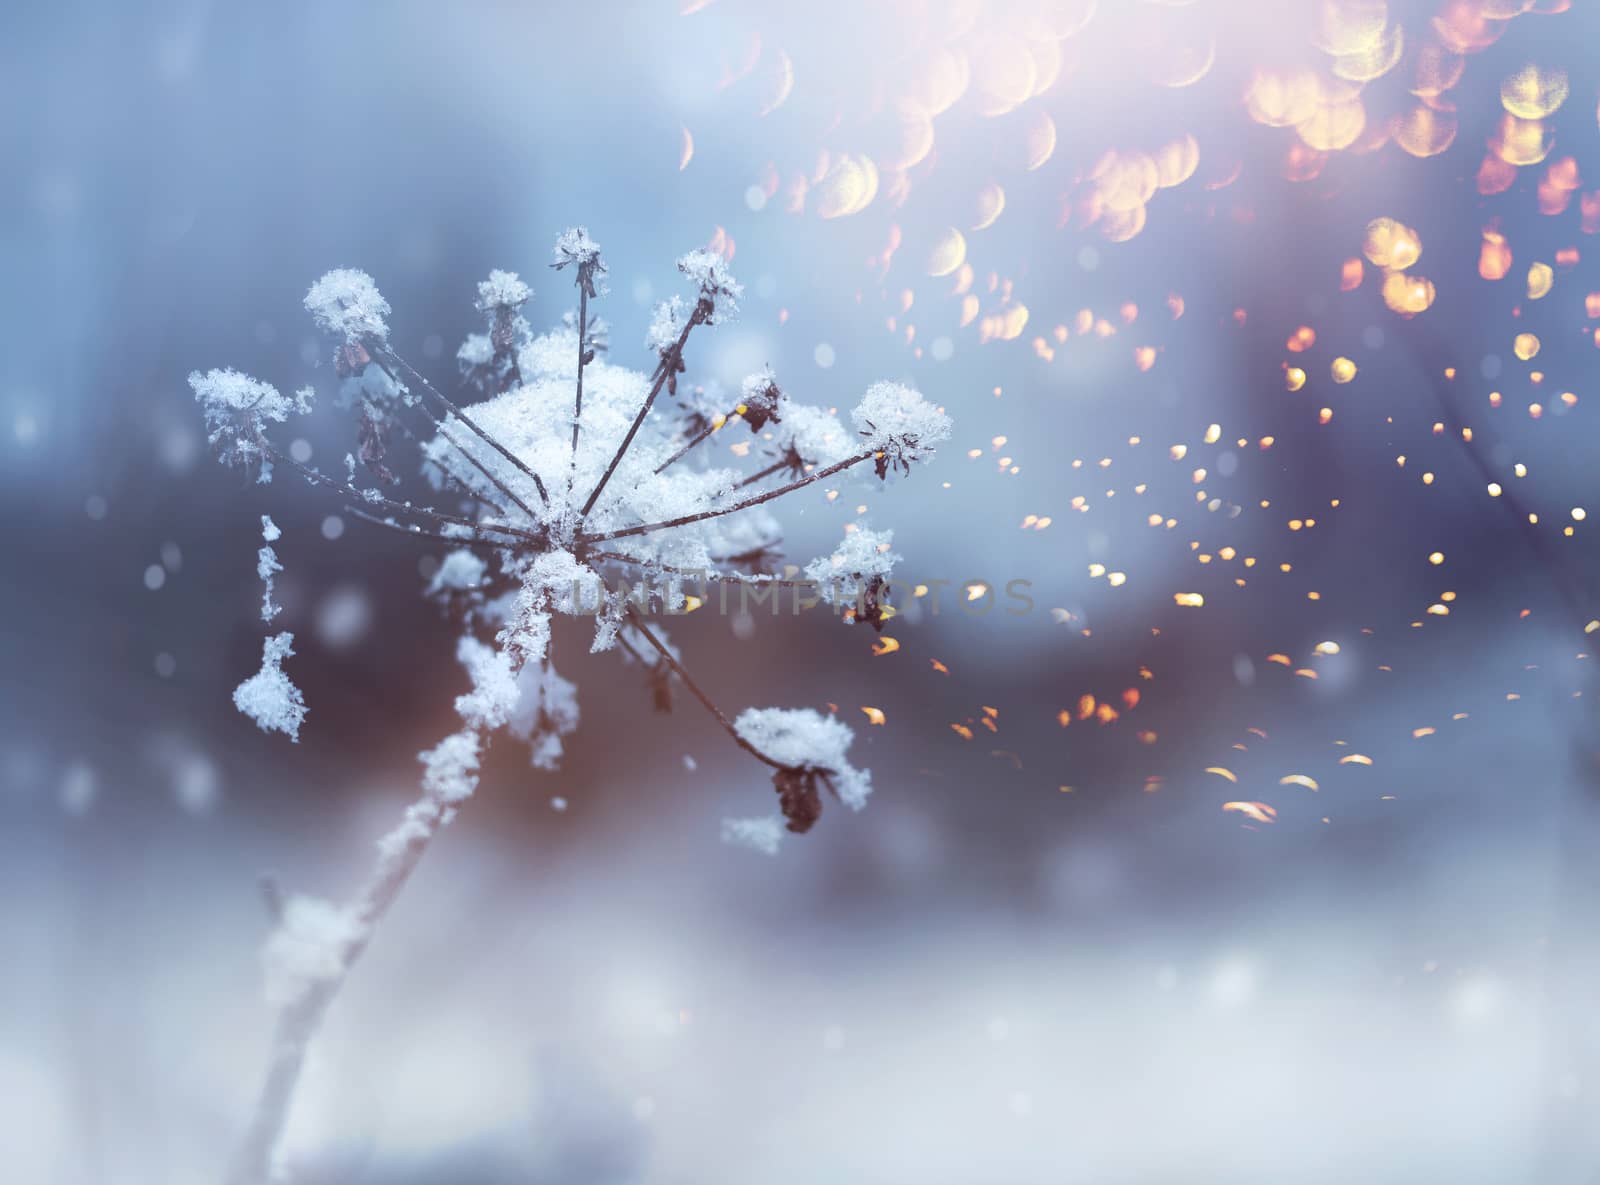 Frozen flower twig in winter snowfall by anterovium